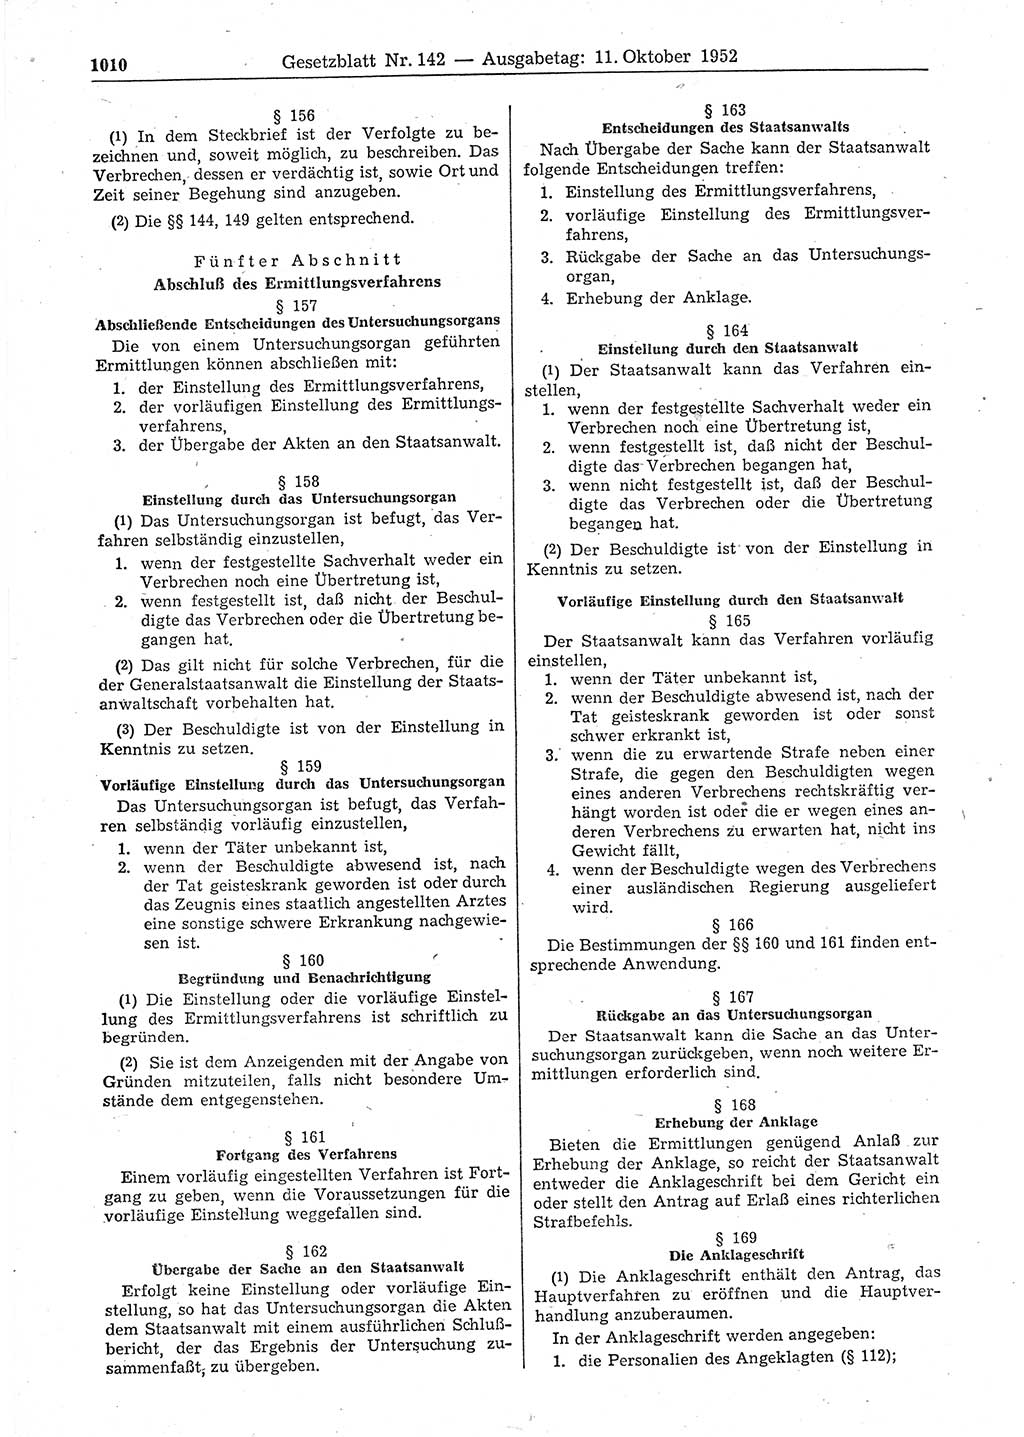 Gesetzblatt (GBl.) der Deutschen Demokratischen Republik (DDR) 1952, Seite 1010 (GBl. DDR 1952, S. 1010)